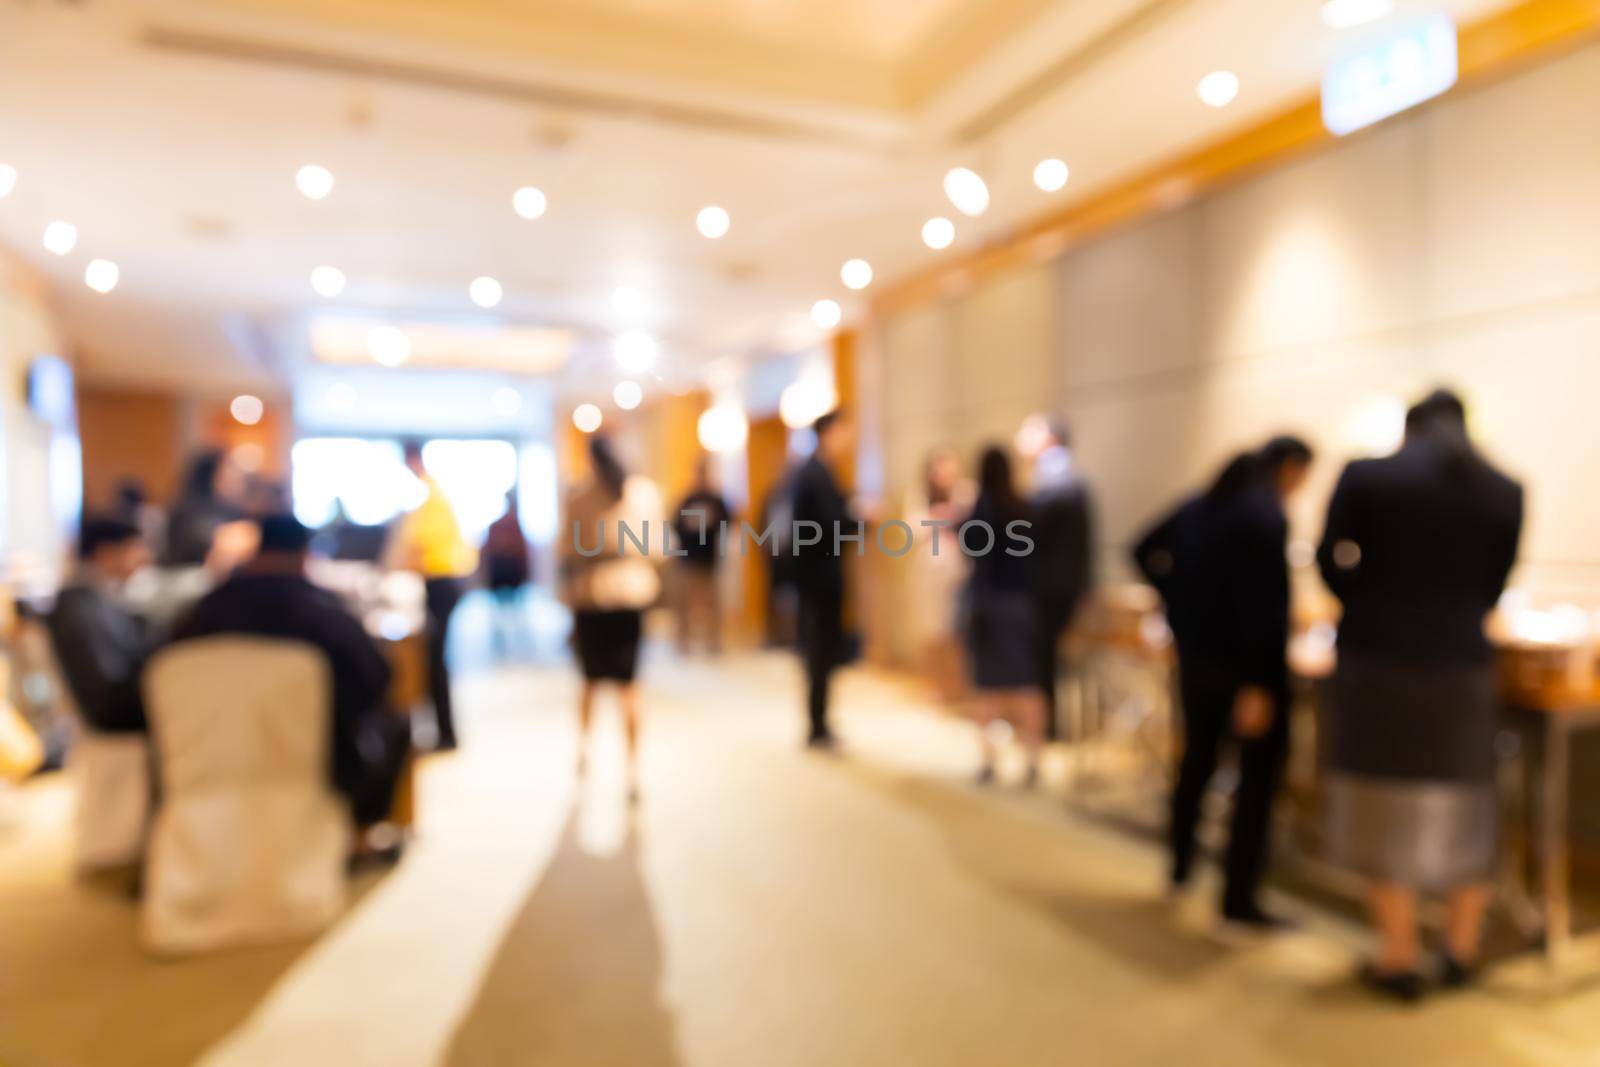 abstract blur people having coffee break in business seminar meeting